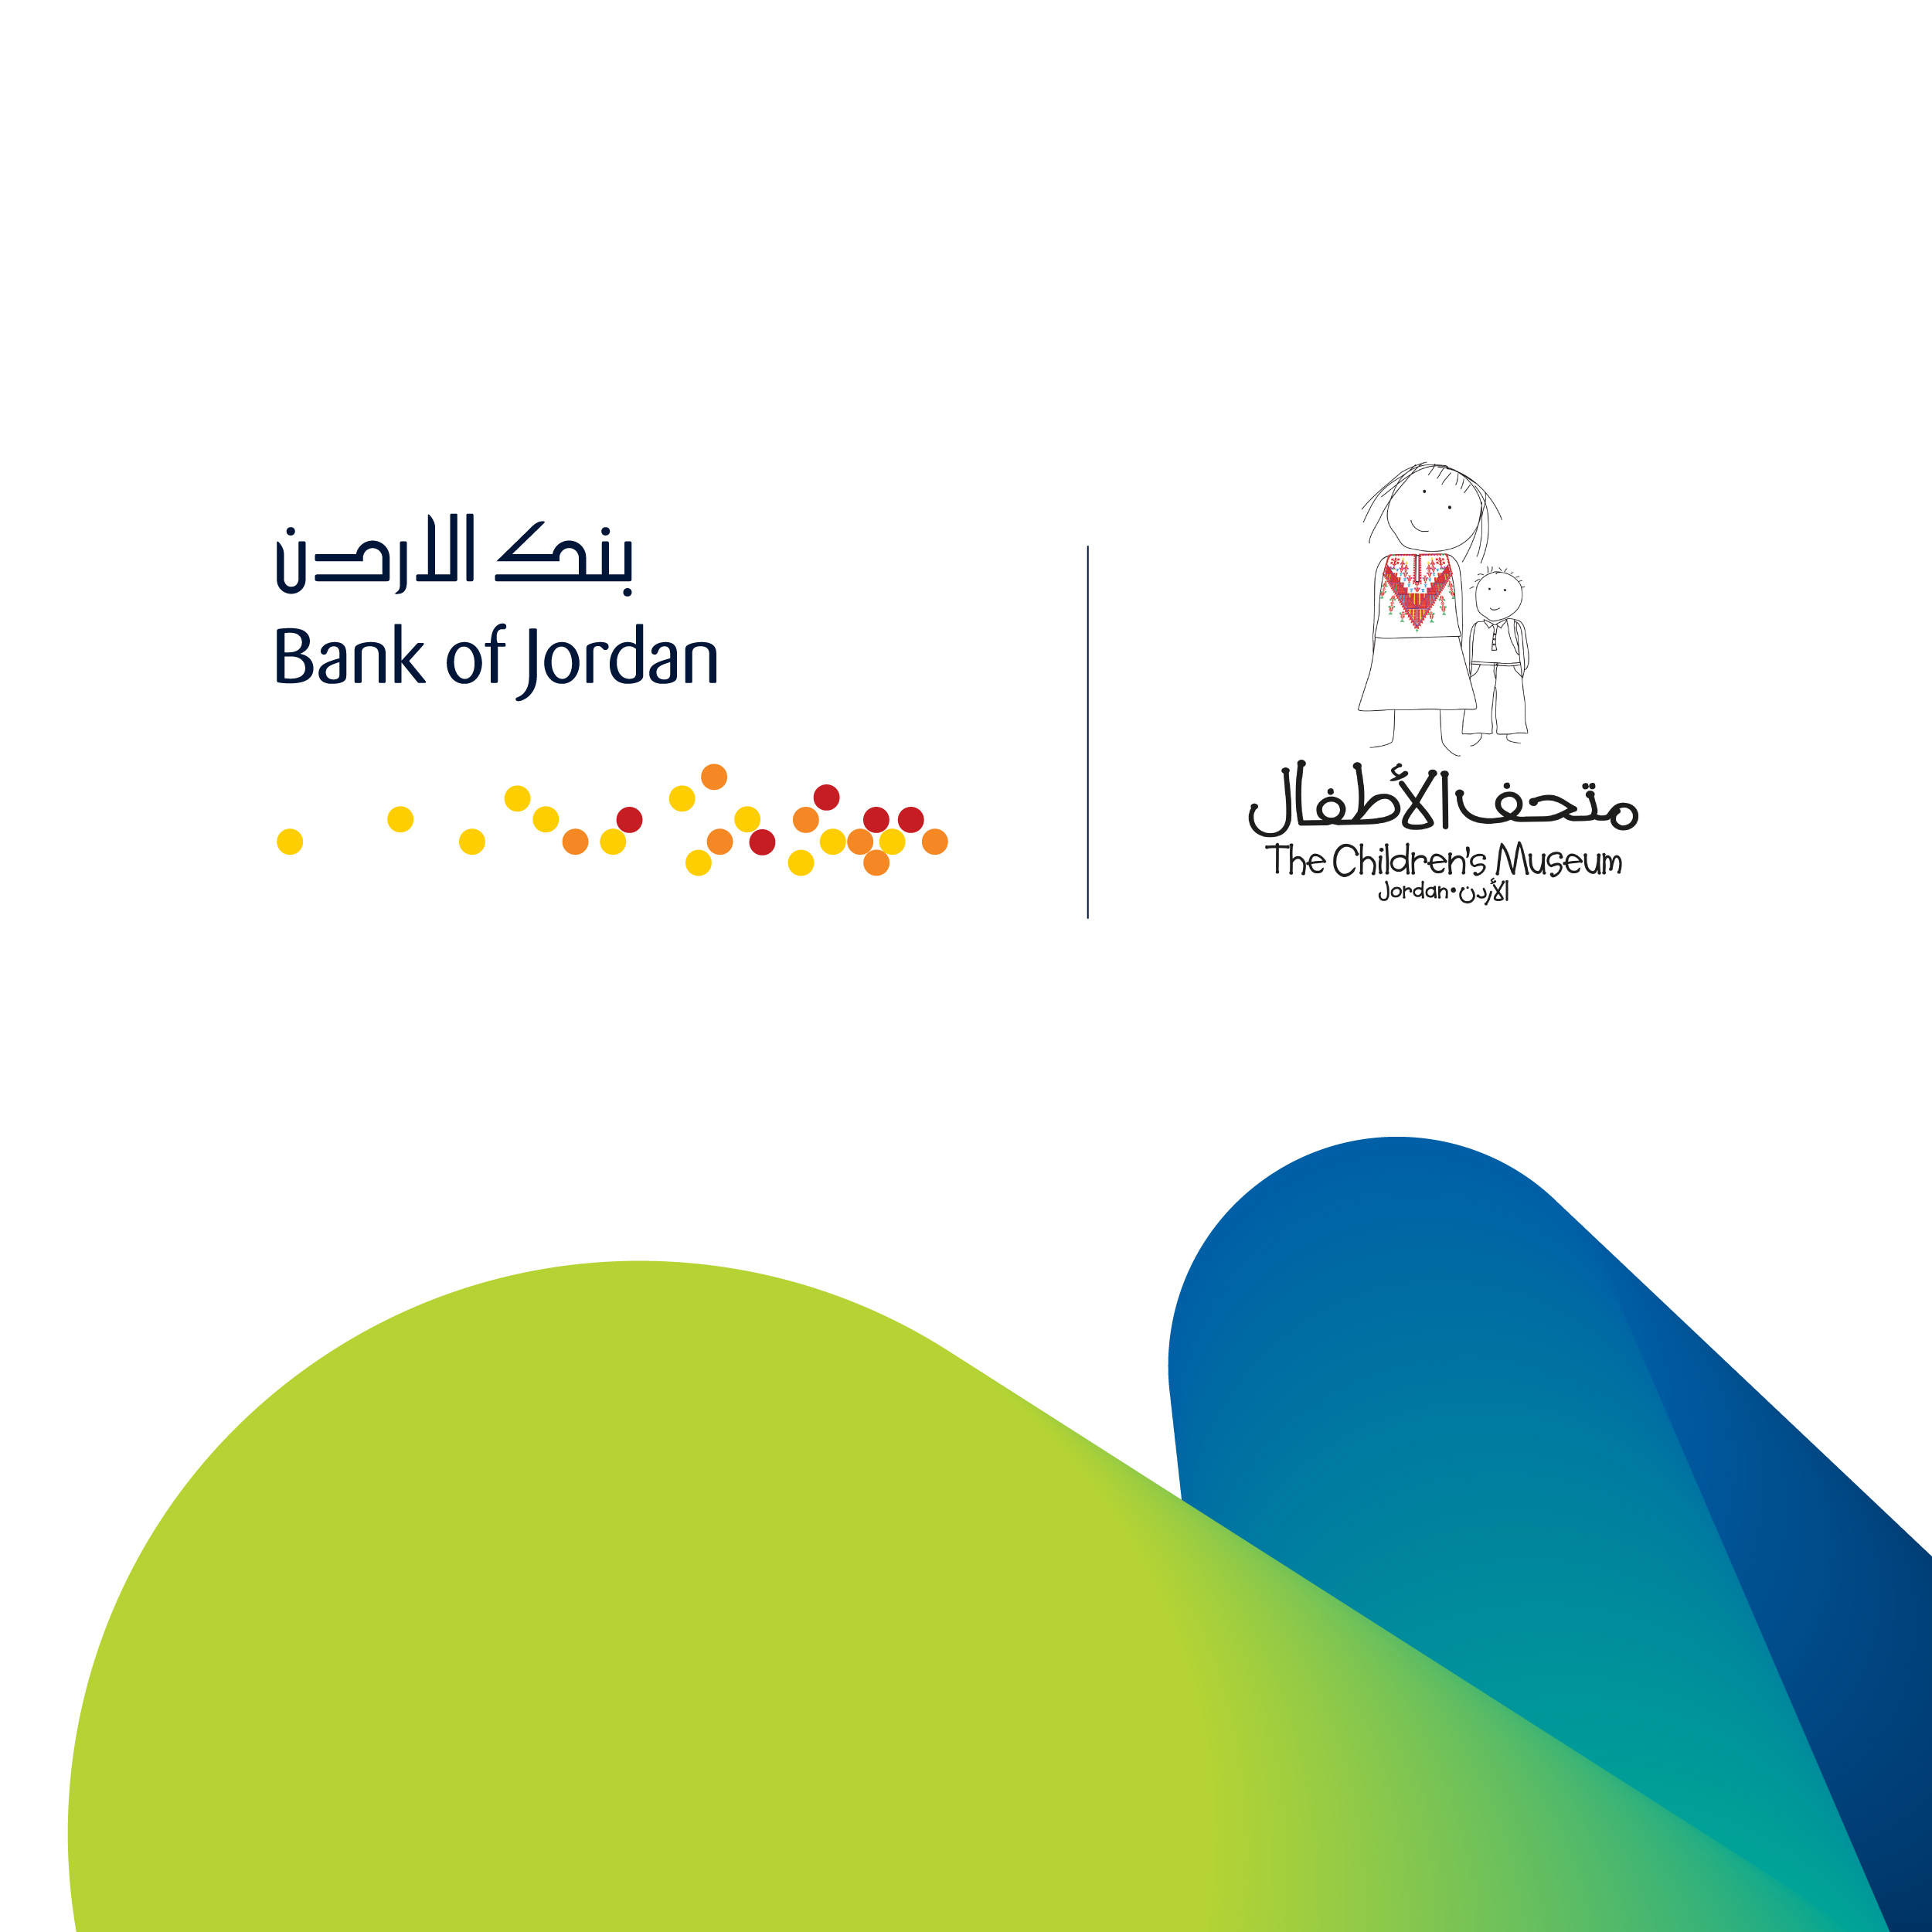 بنك الأردن يواصل دعمه لمتحف الأطفال المتنقل 